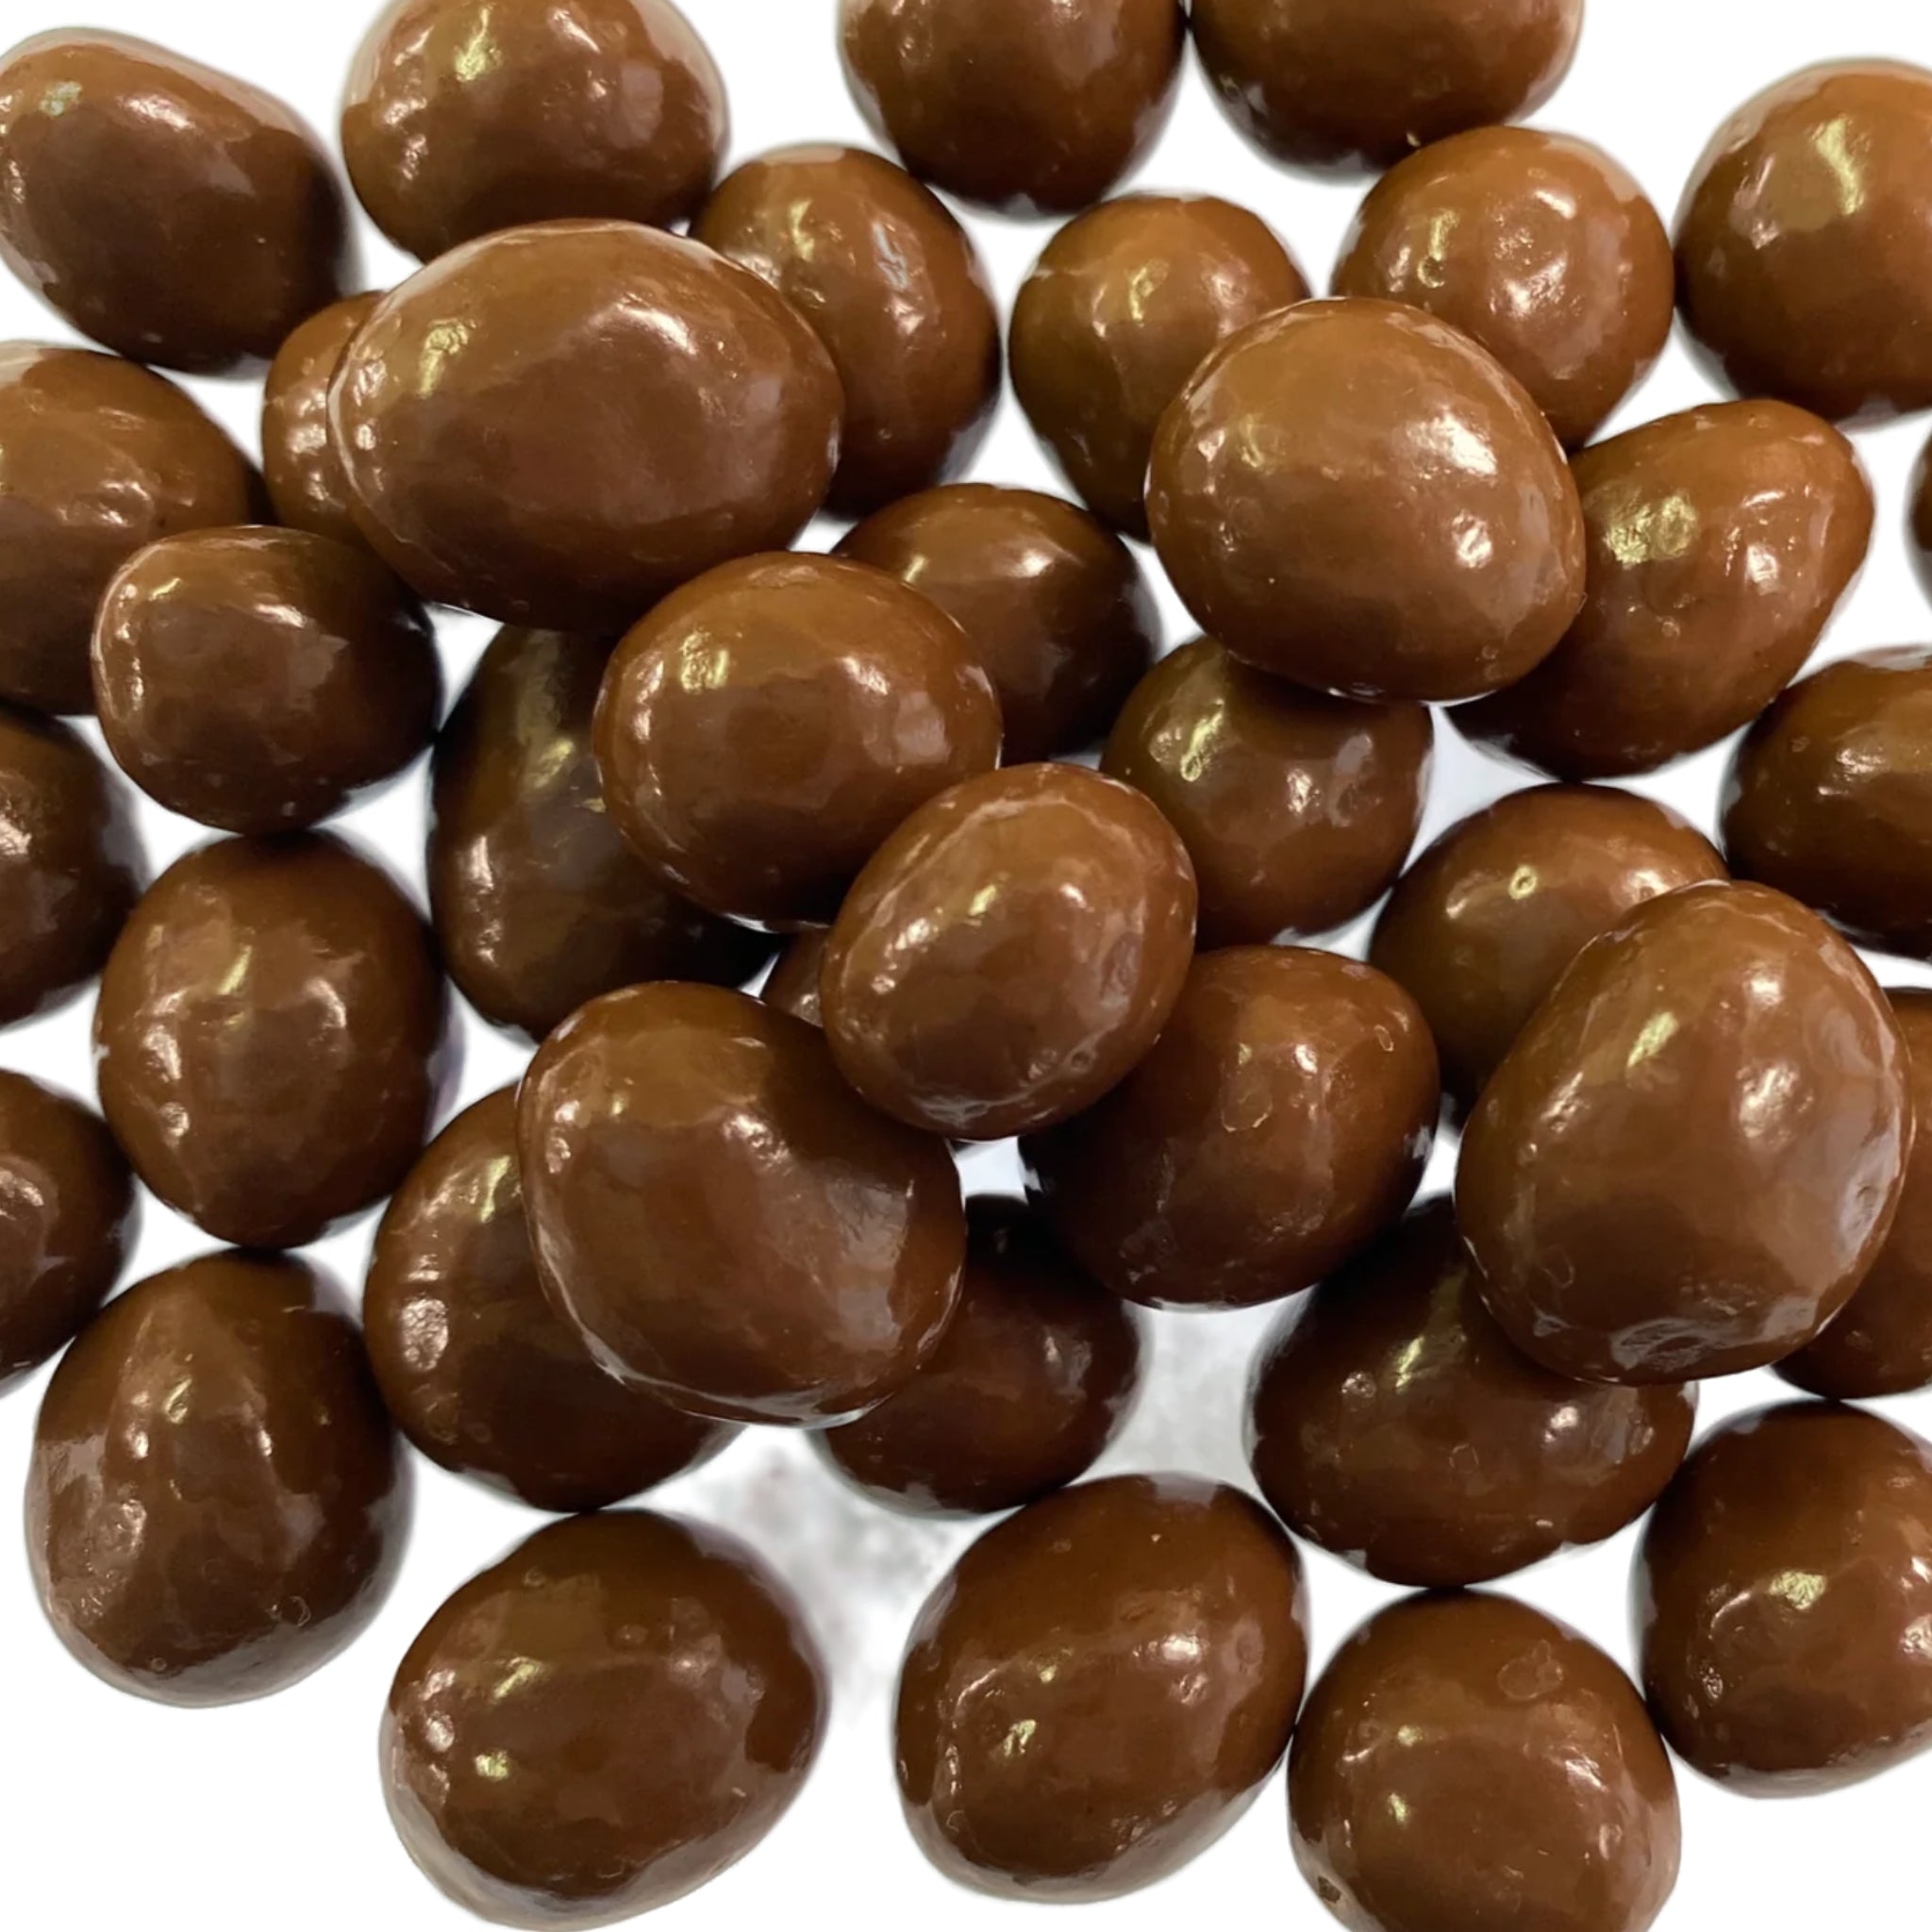 Roundish small dark choclaated covered raisins 